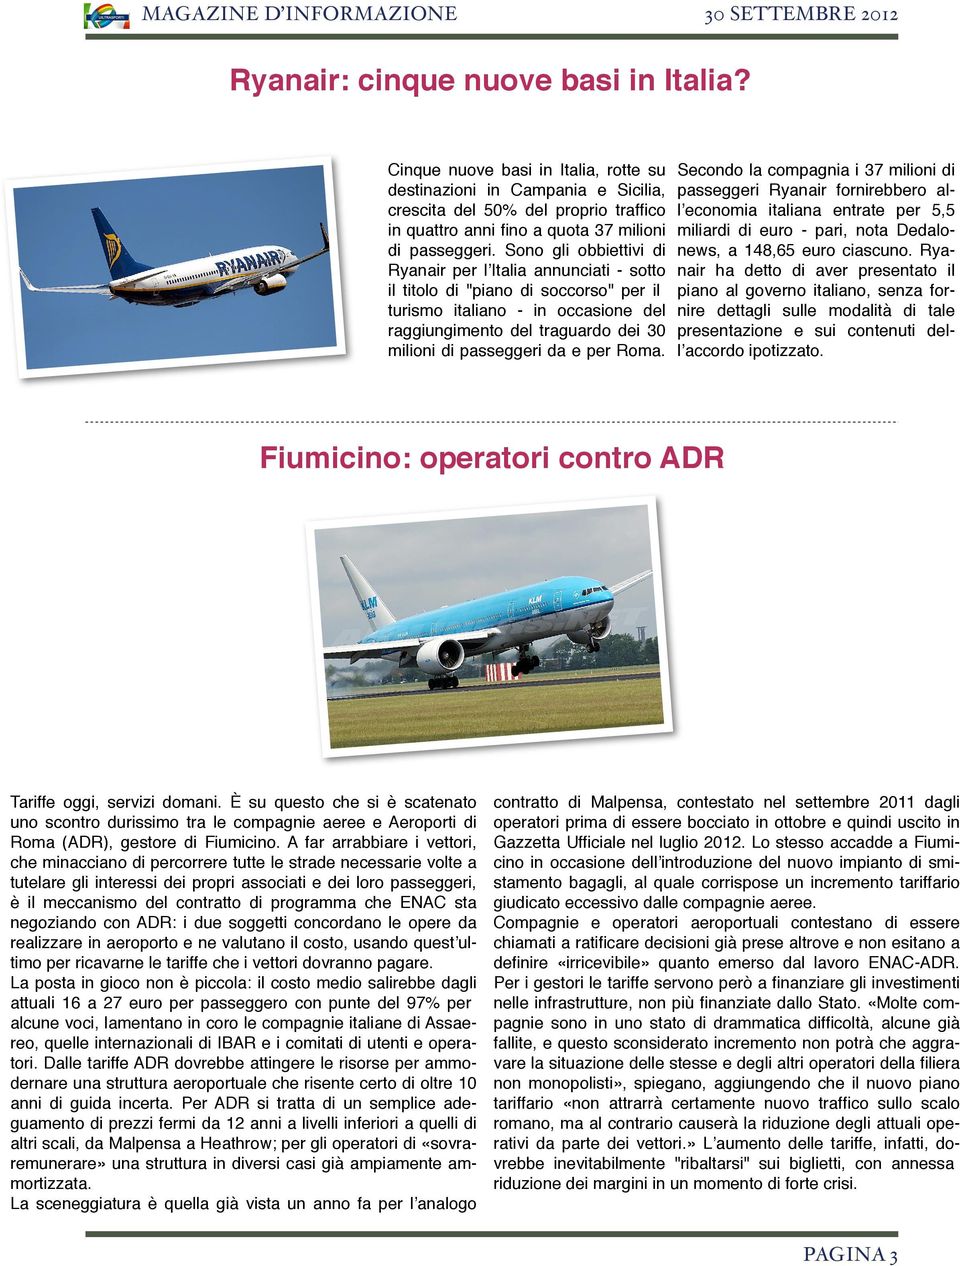 Sono gli obbiettivi di Ryanair per lʼitalia annunciati - sotto il titolo di "piano di soccorso" per il turismo italiano - in occasione del raggiungimento del traguardo dei 30 milioni di passeggeri da